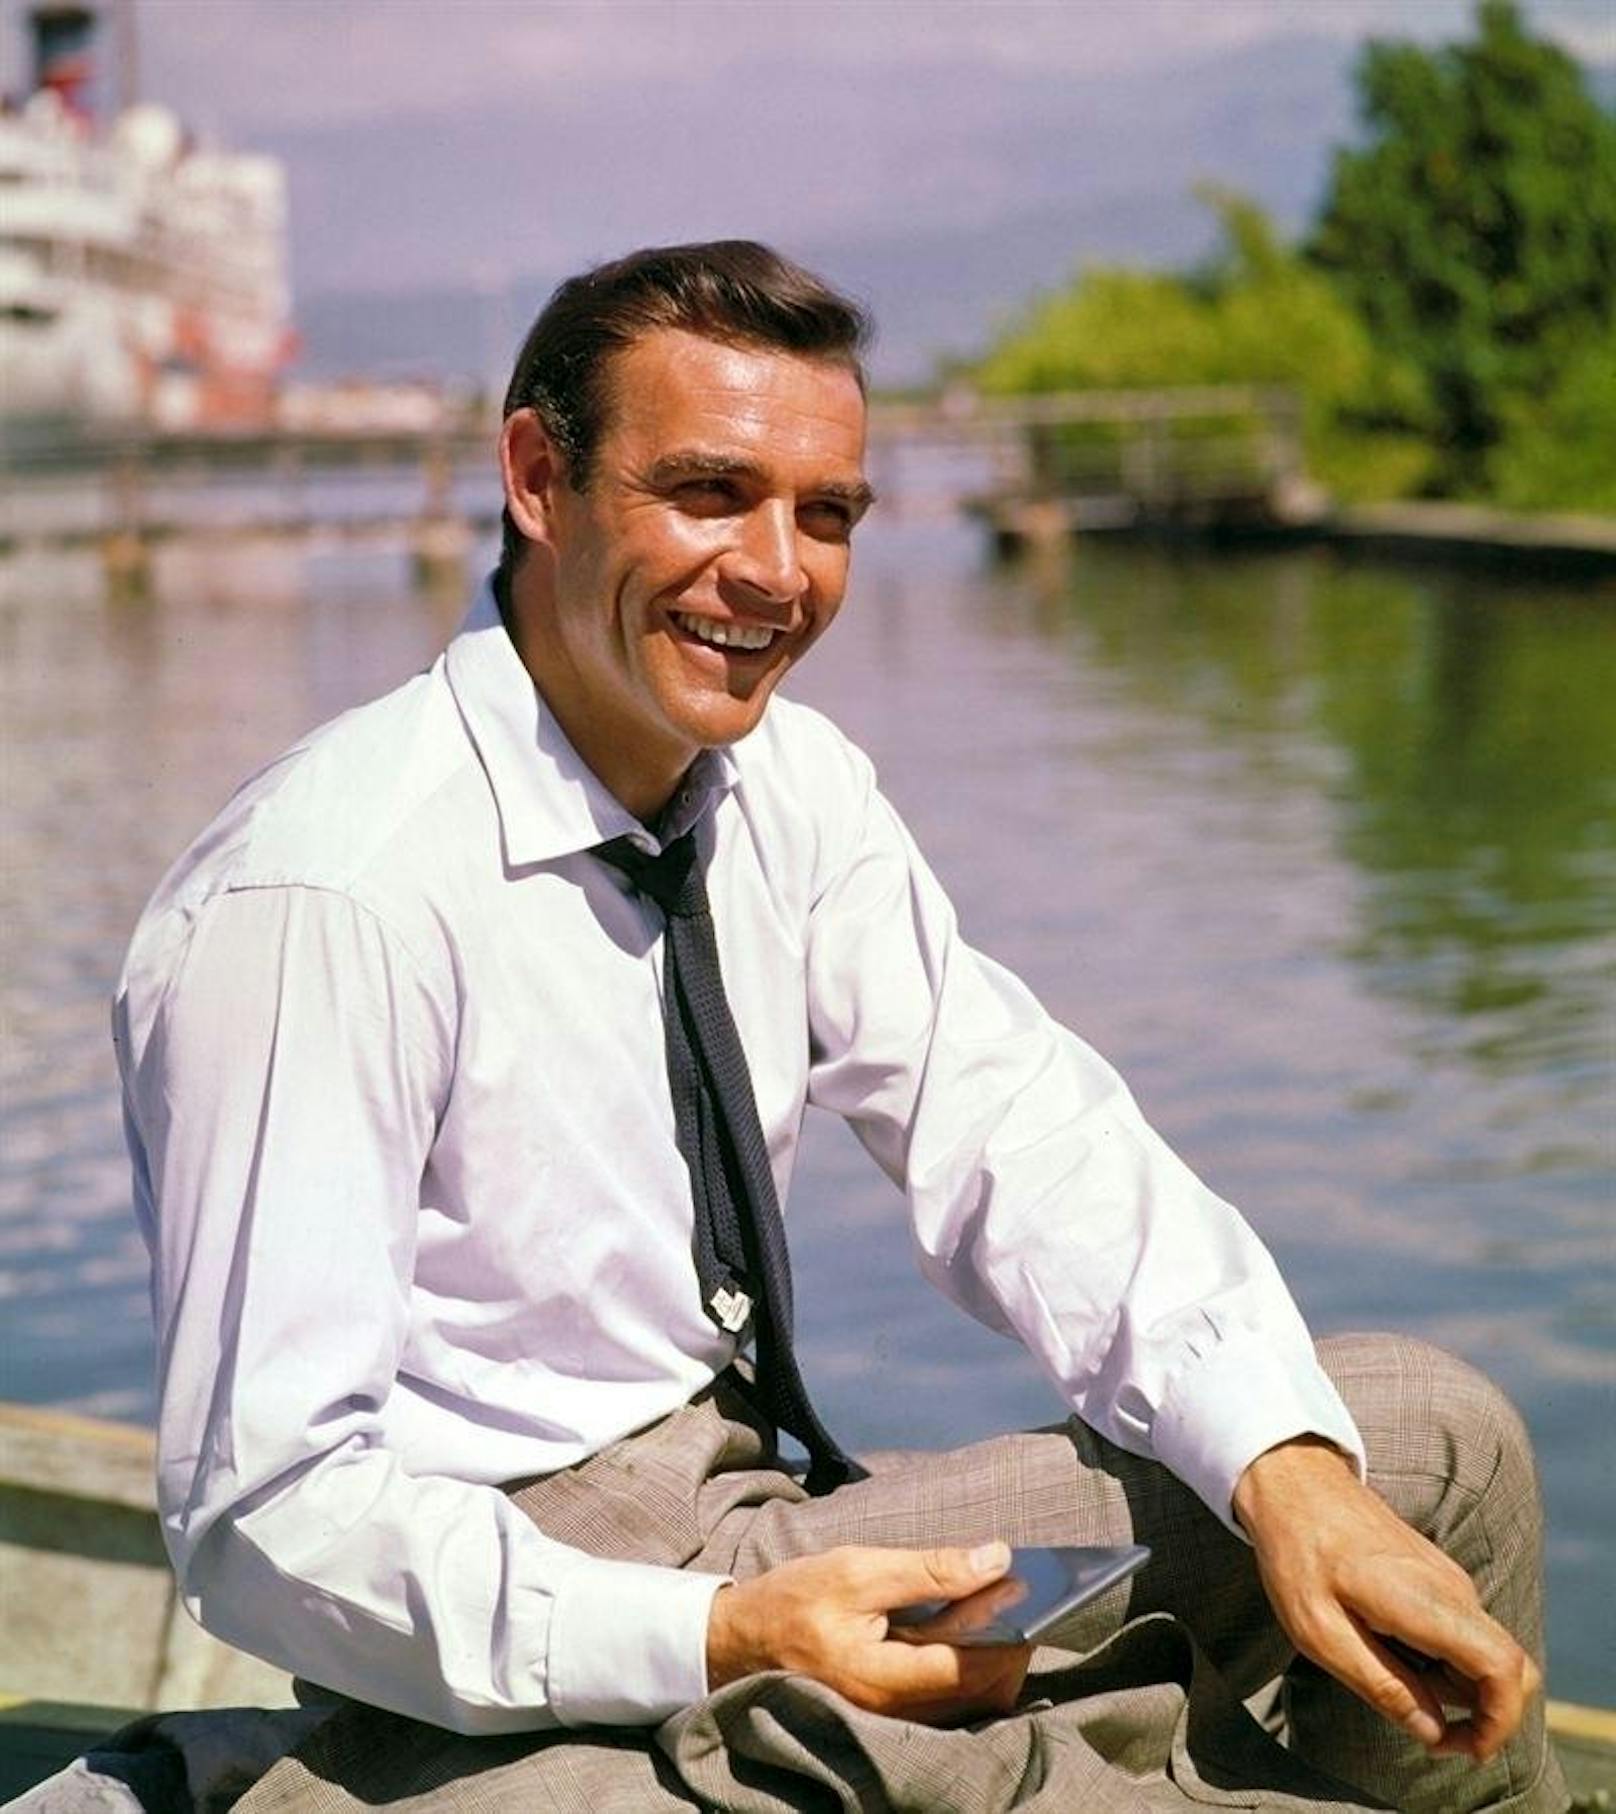 Der erste Kino-Bond aller Zeiten: Sean Connery in "James Bond jagt Dr. No" (1962)